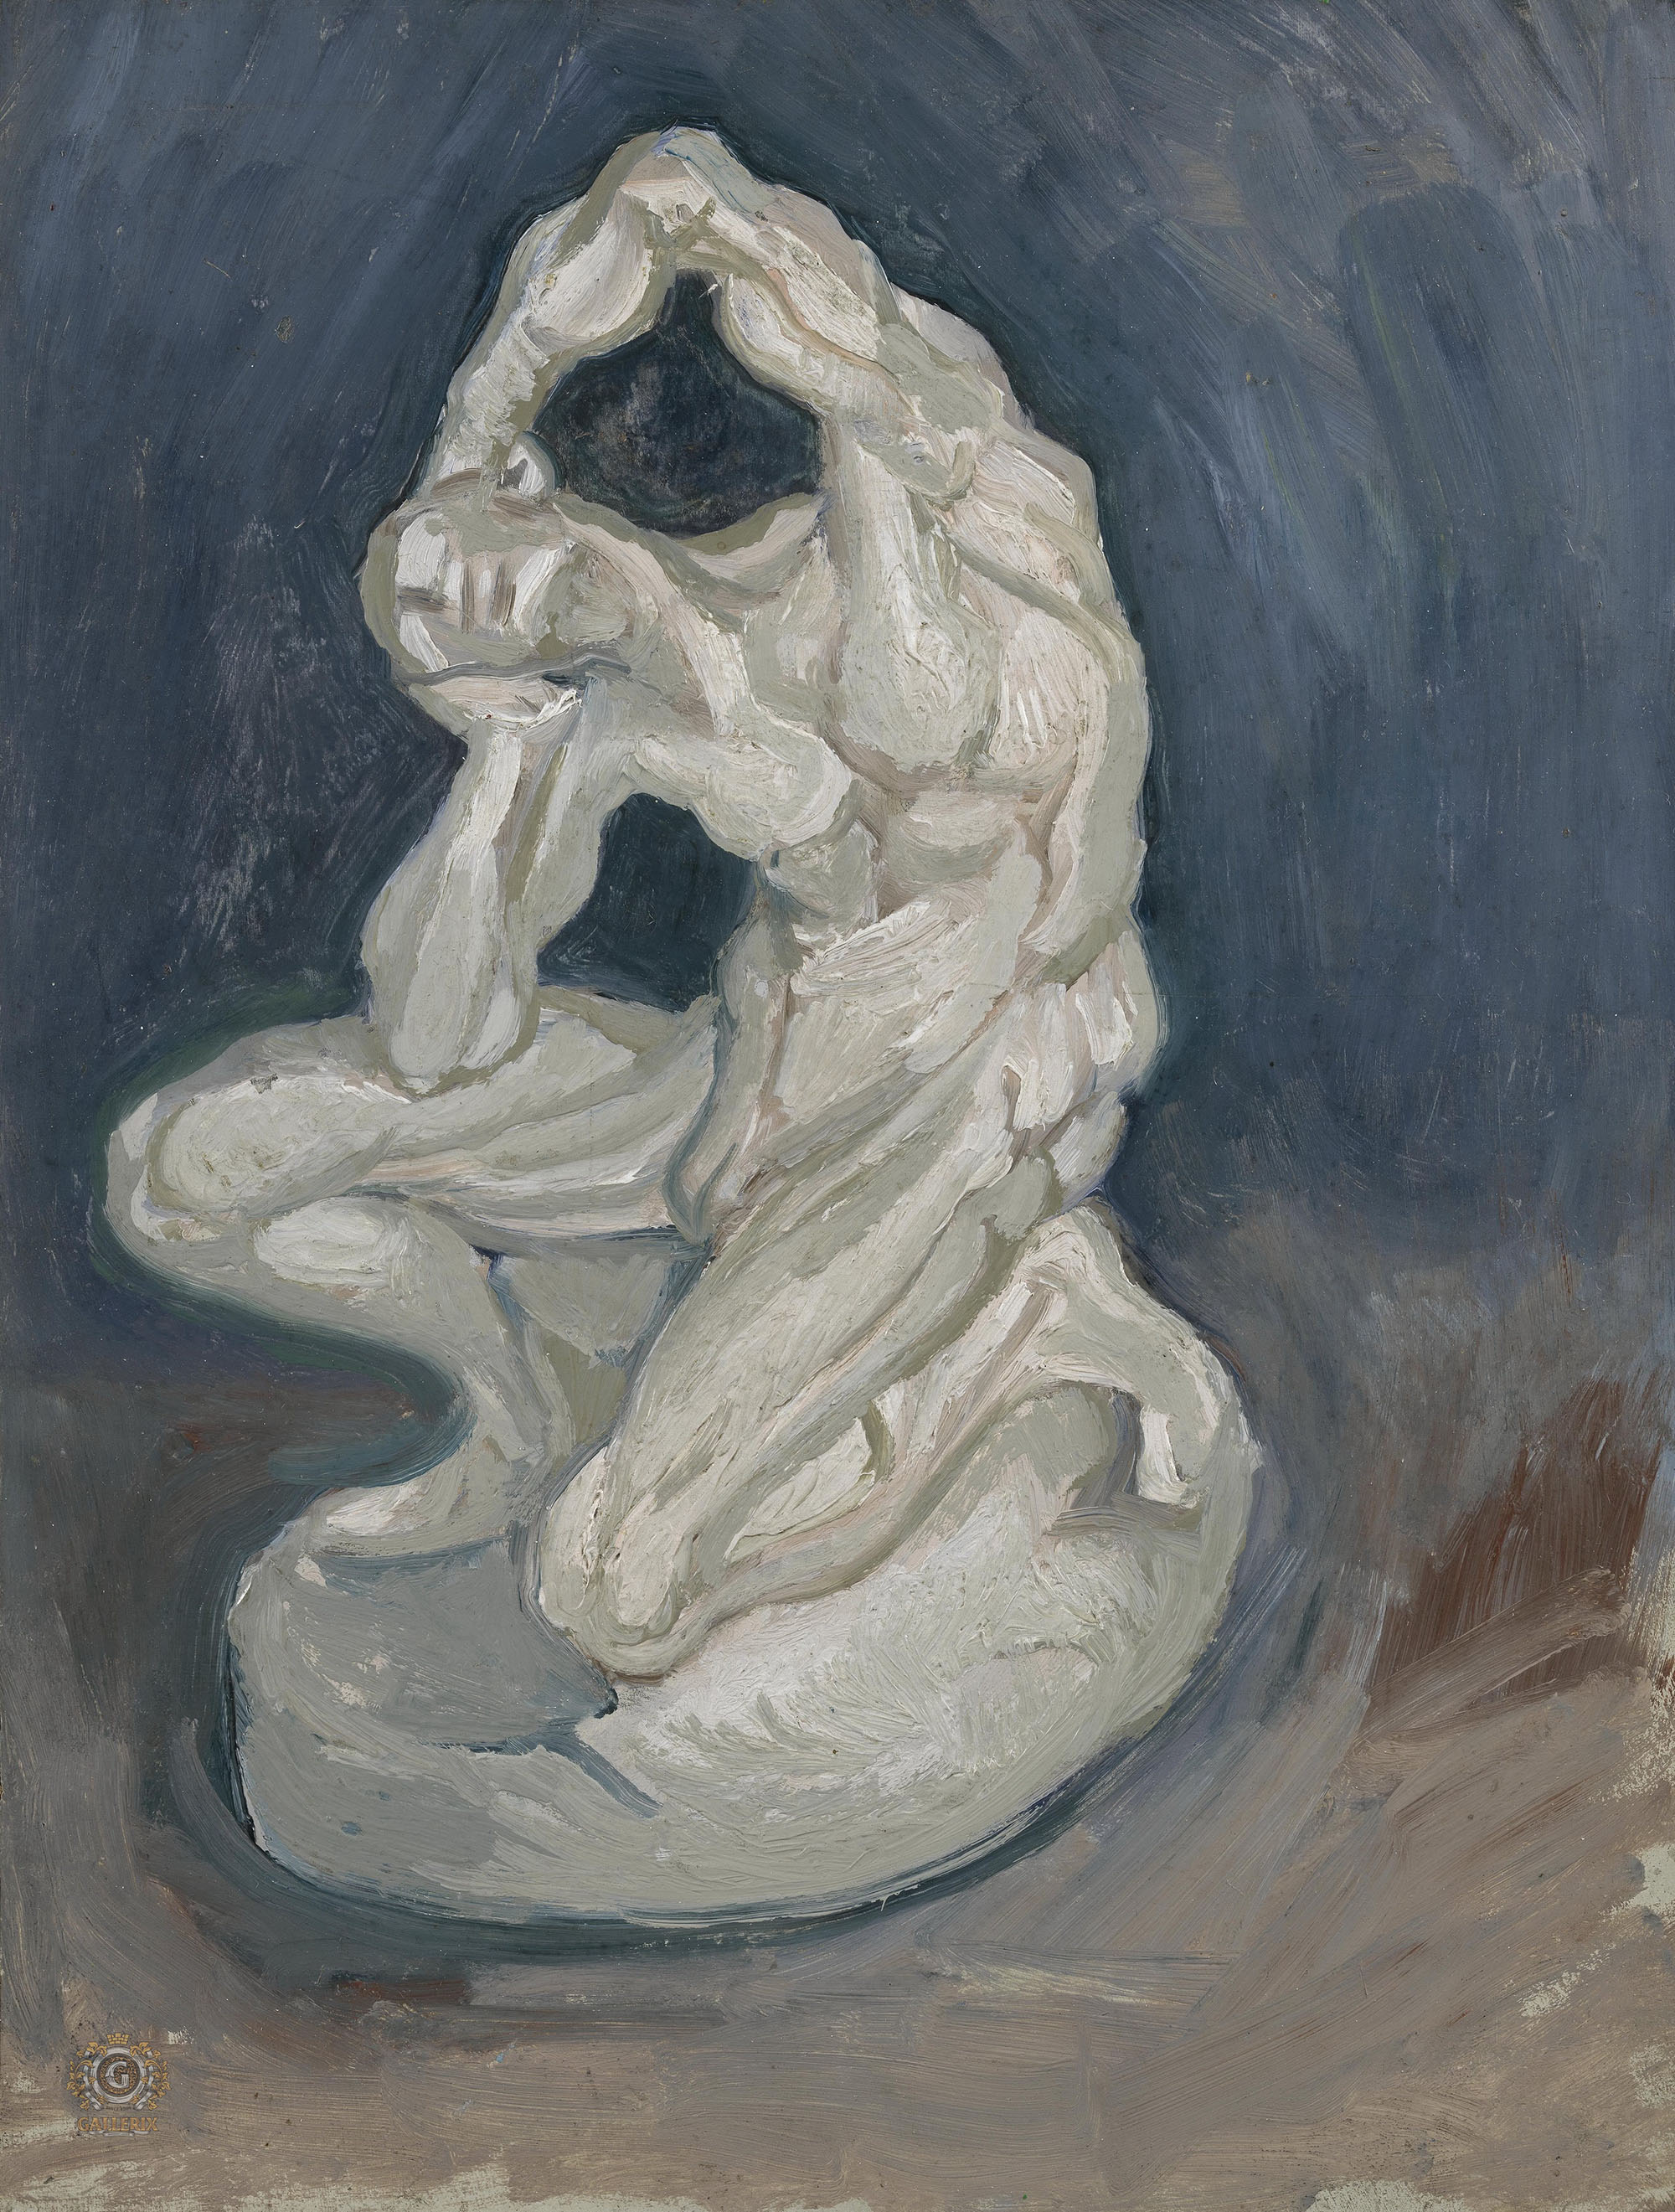 Винсент Ван Гог. "Гипсовая статуэтка коленопреклонённого мужчины". 1886. Музей Ван Гога, Амстердам.